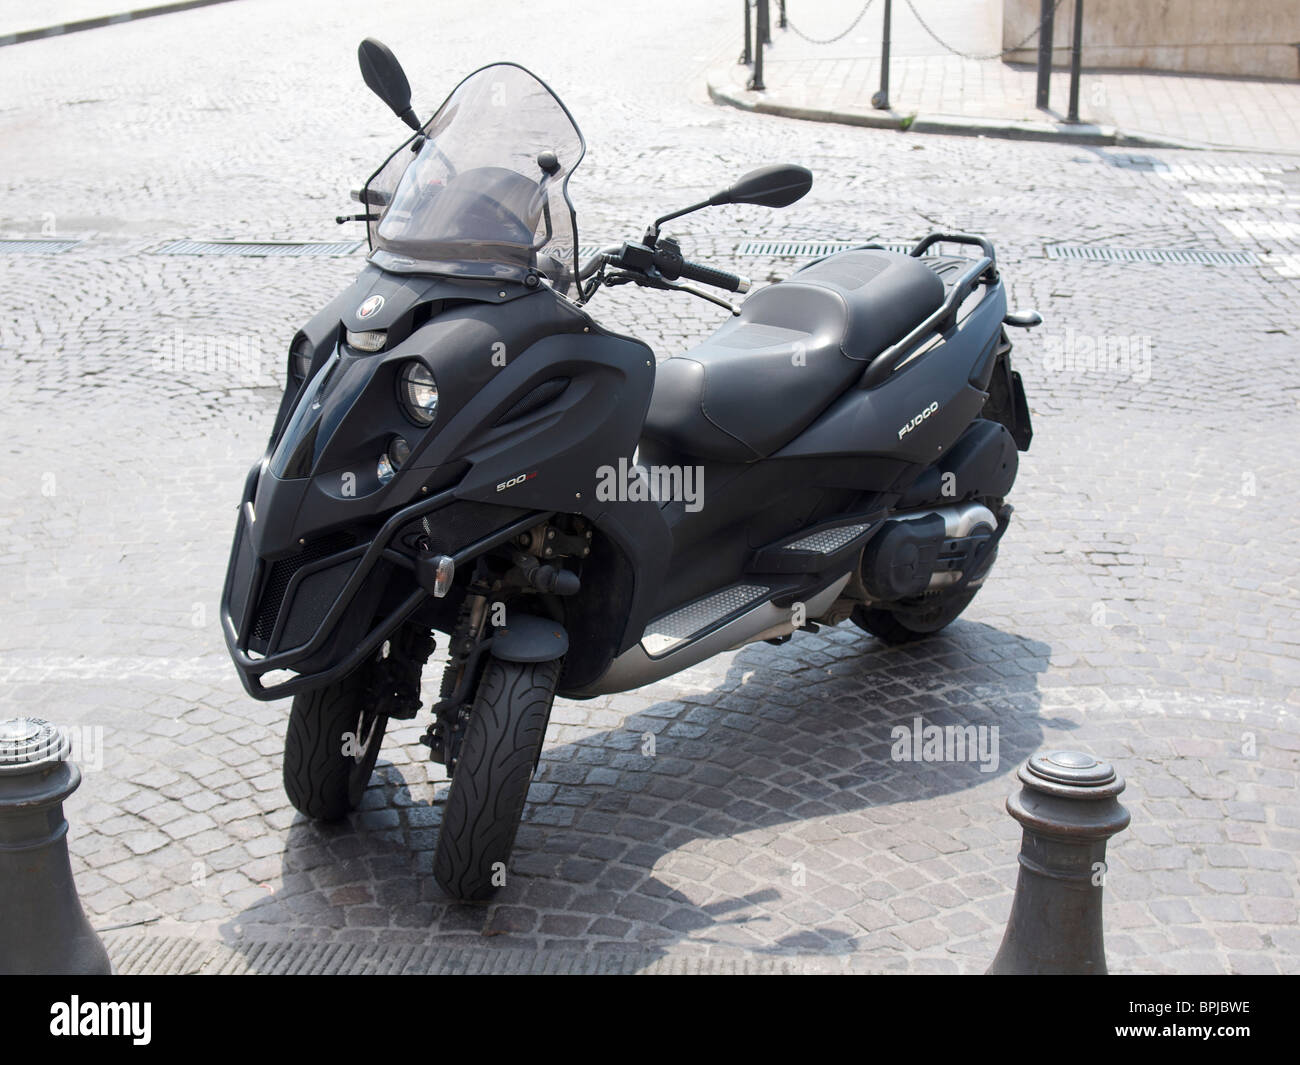 Gilera Fuoco 500ie un nouveau type de moto scooter qui a deux roues avant. Pise, Toscane, Italie Banque D'Images